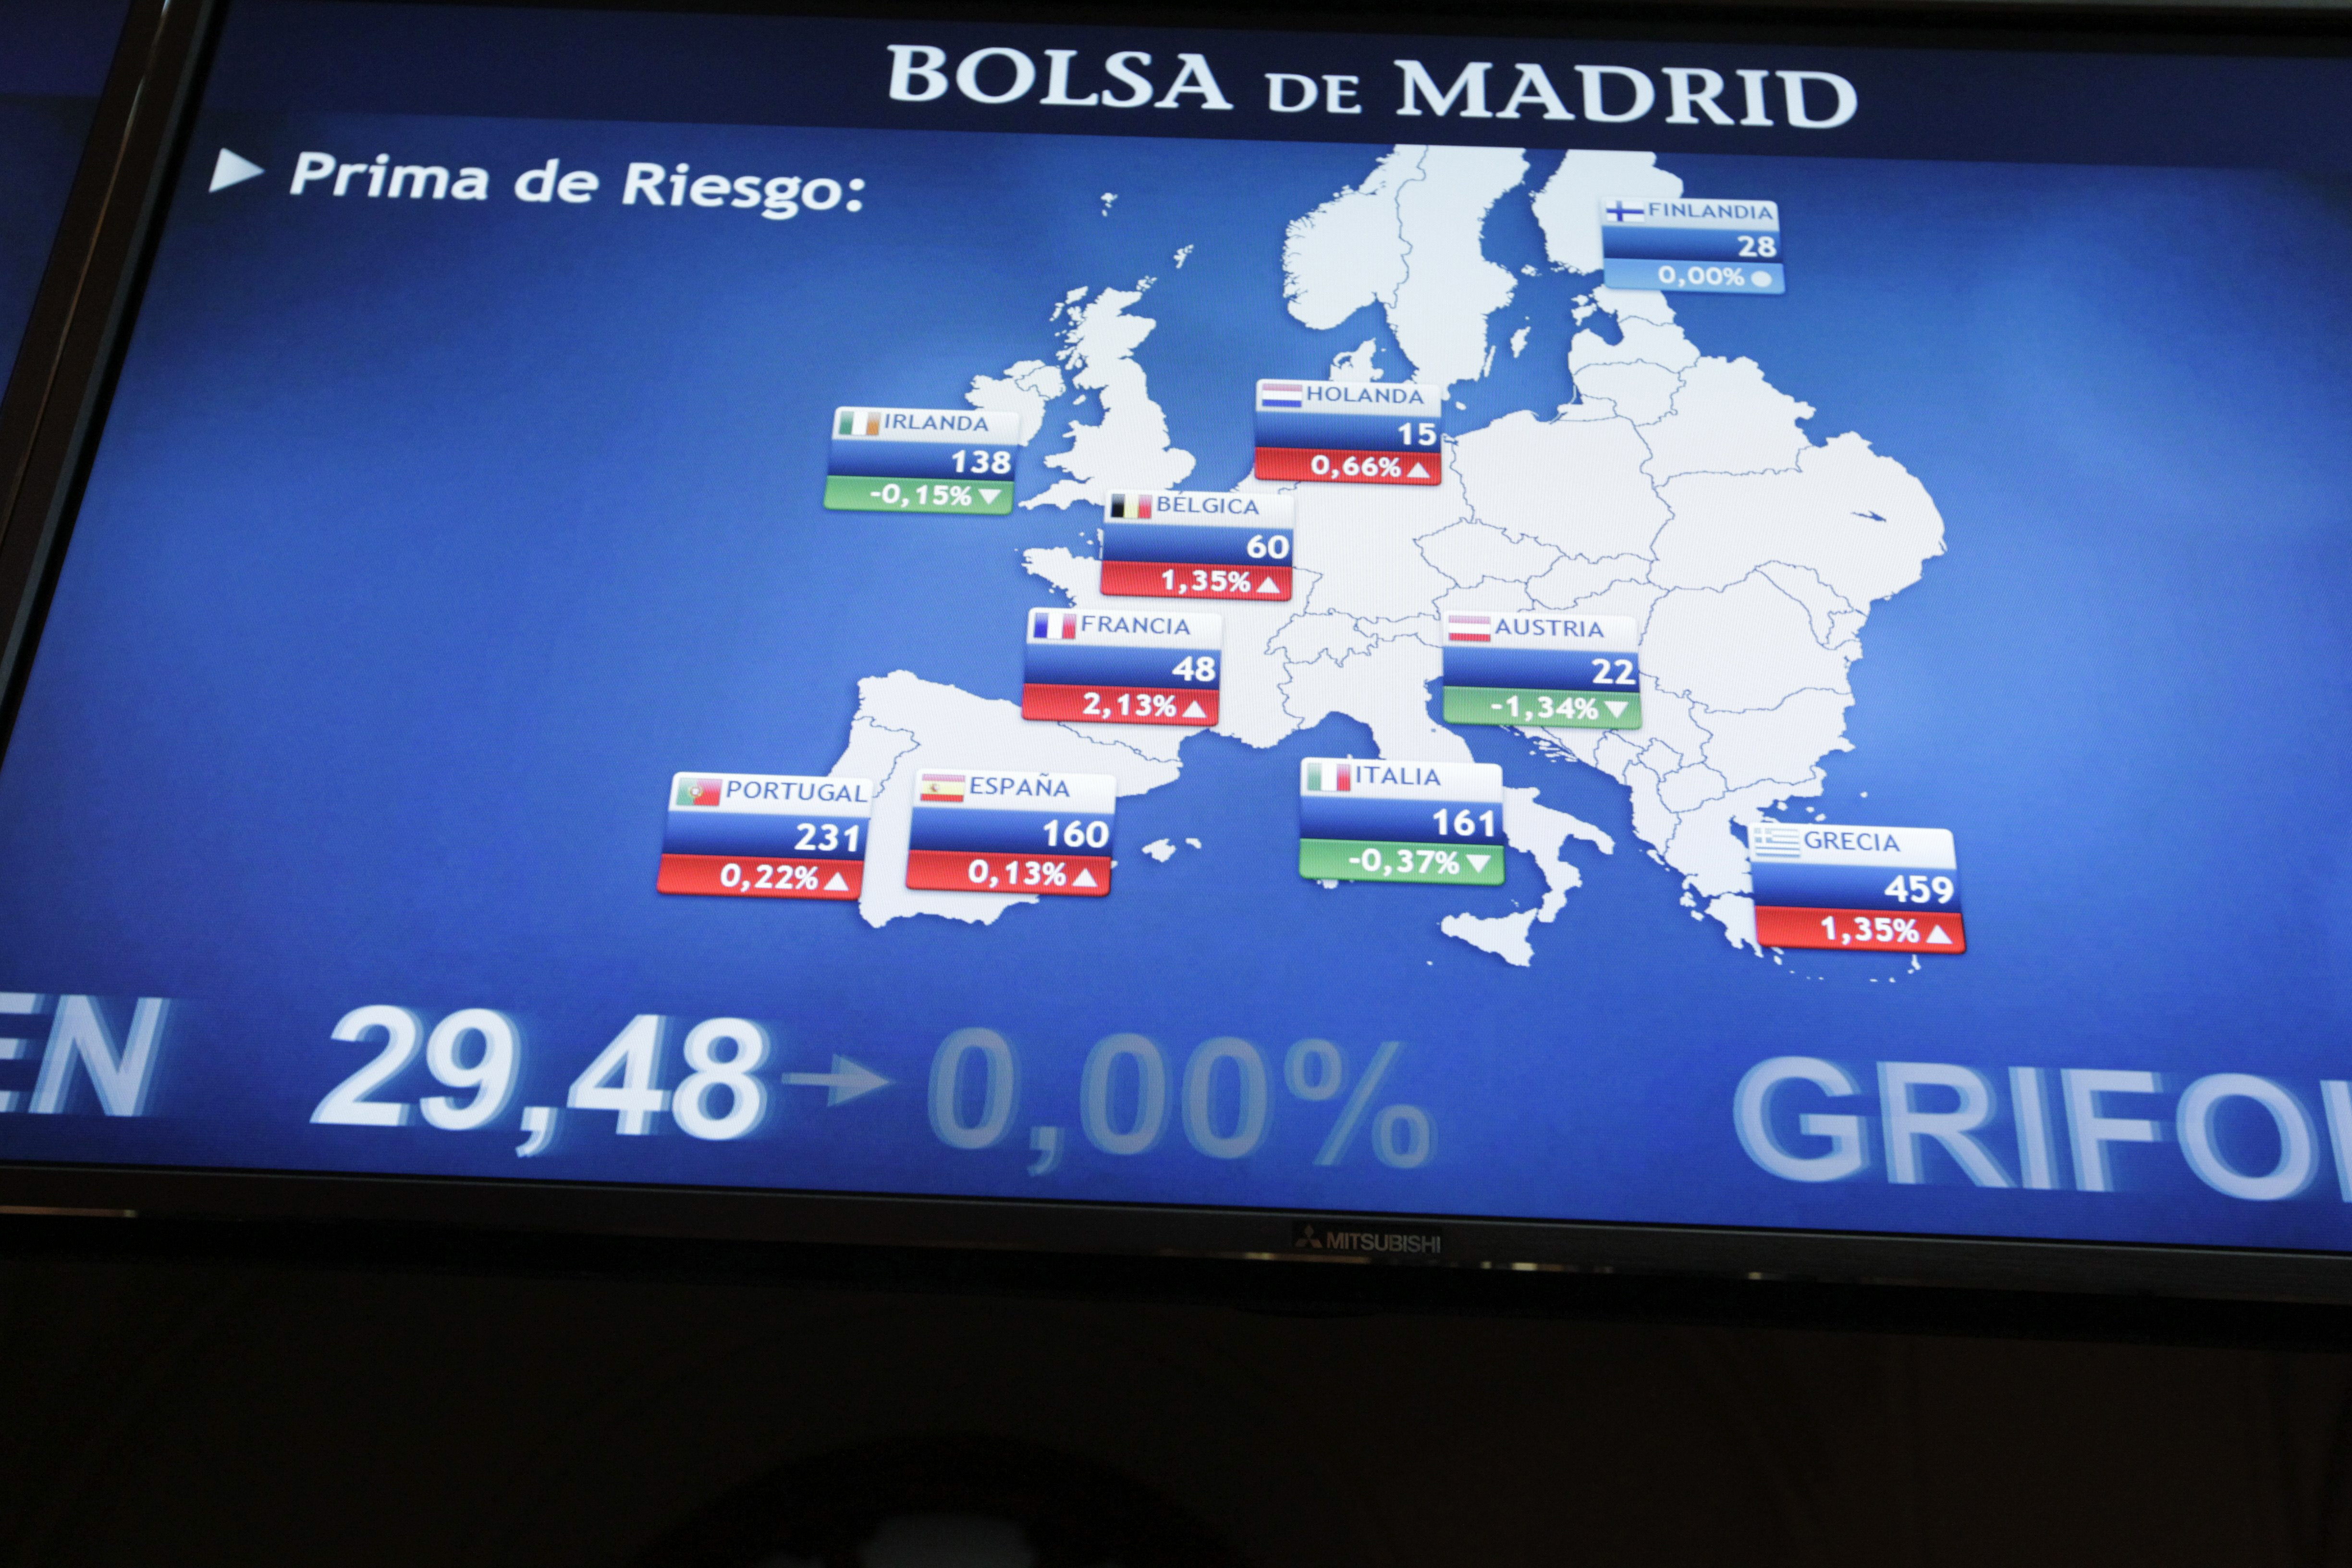 La prima de riesgo española sigue en la apertura en 160 puntos básicos